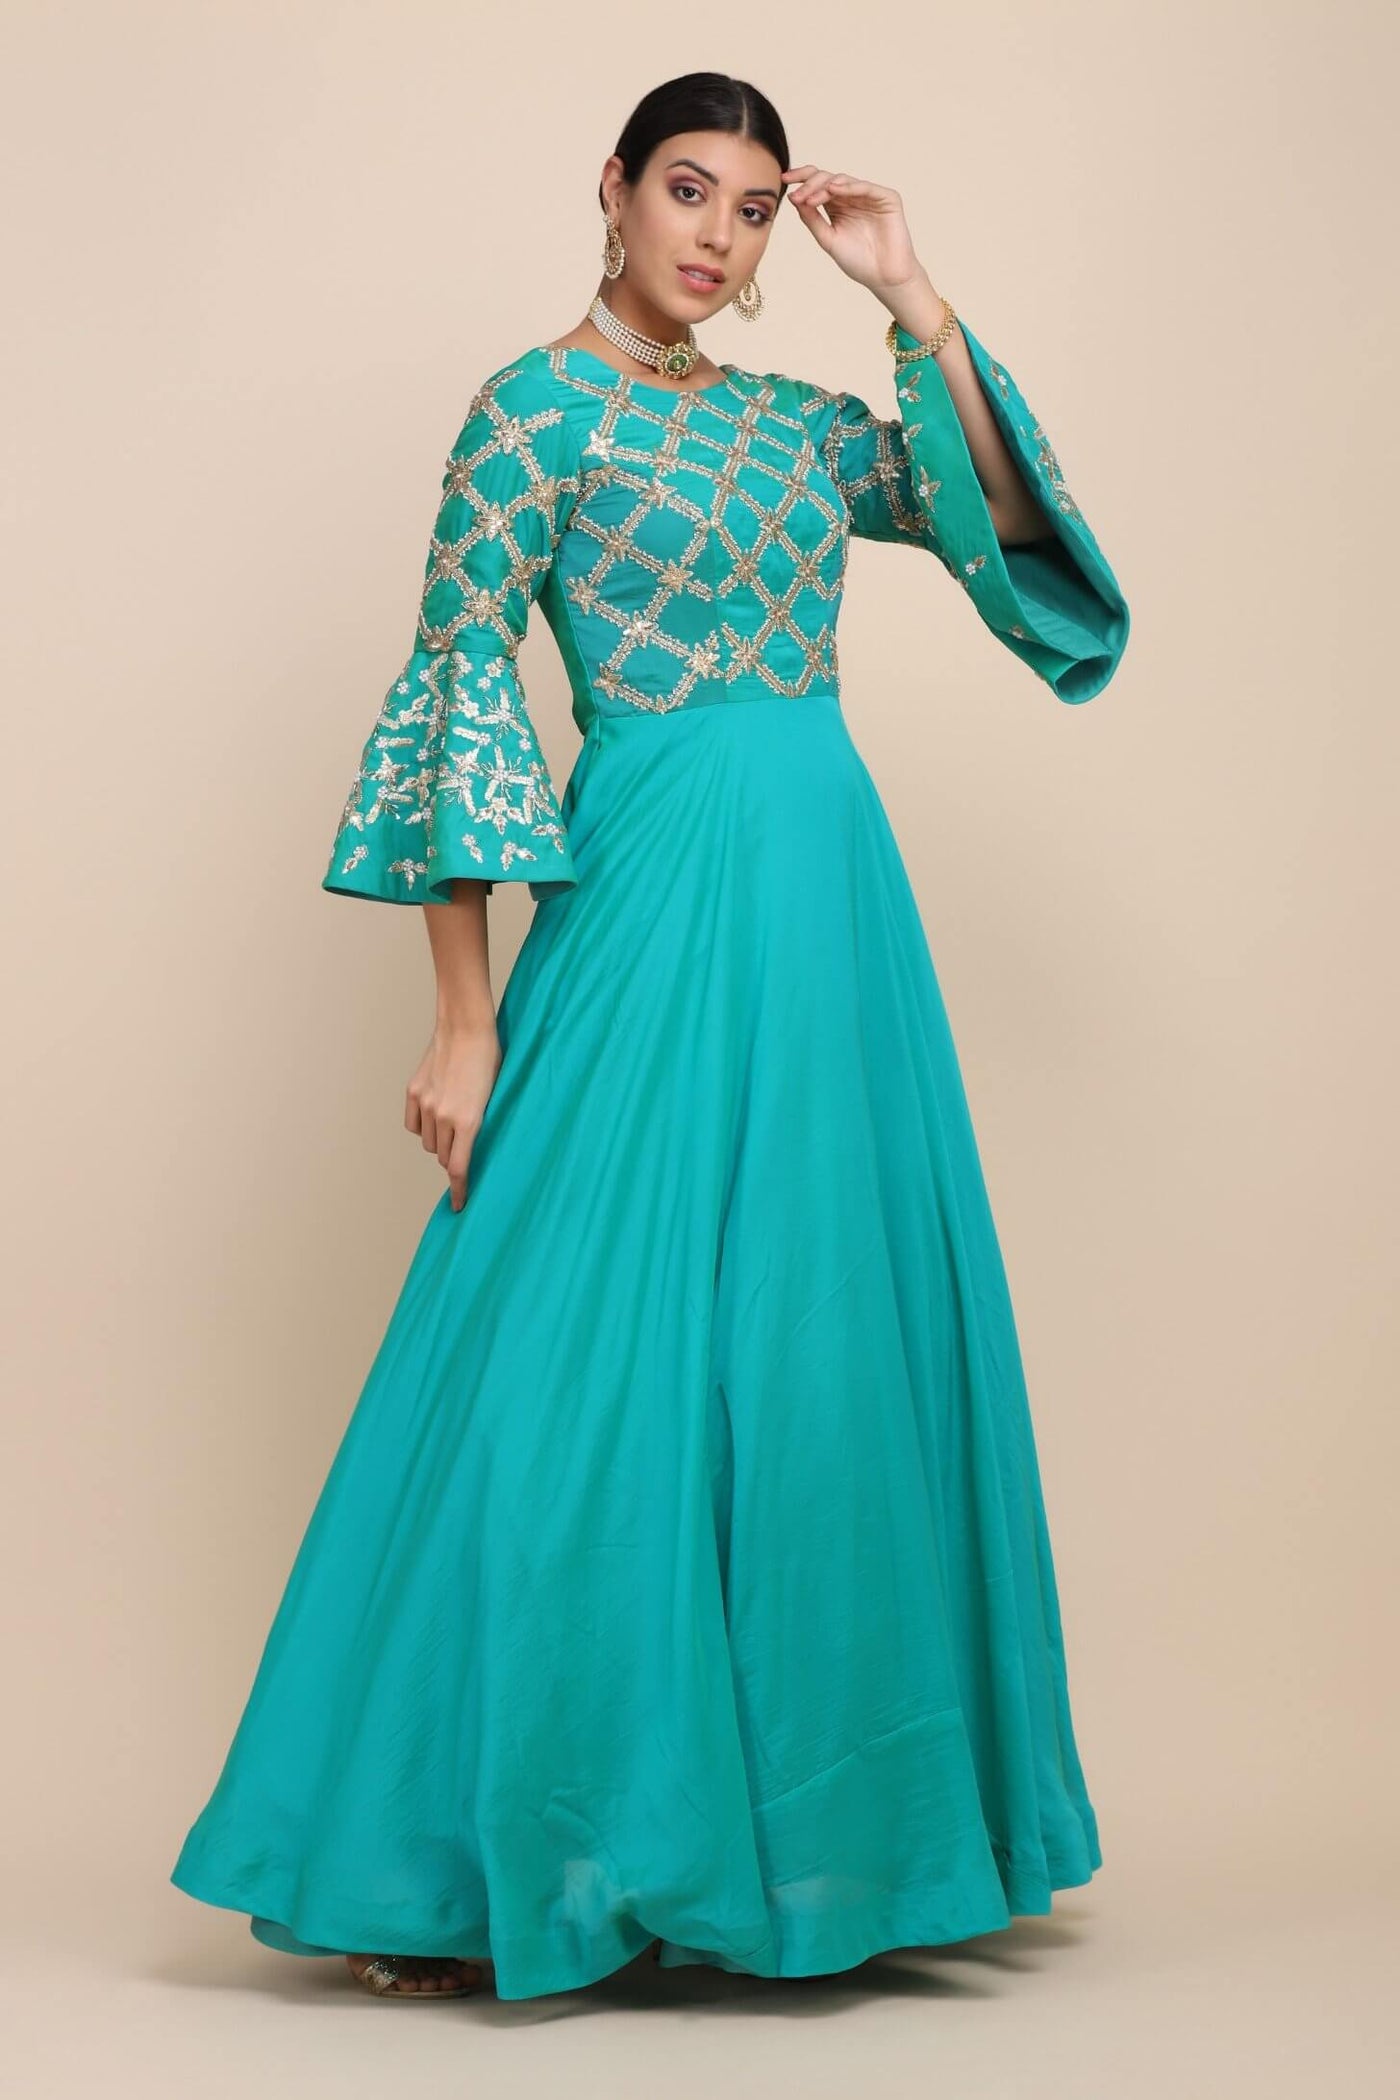 model posing wearing turquoise dress